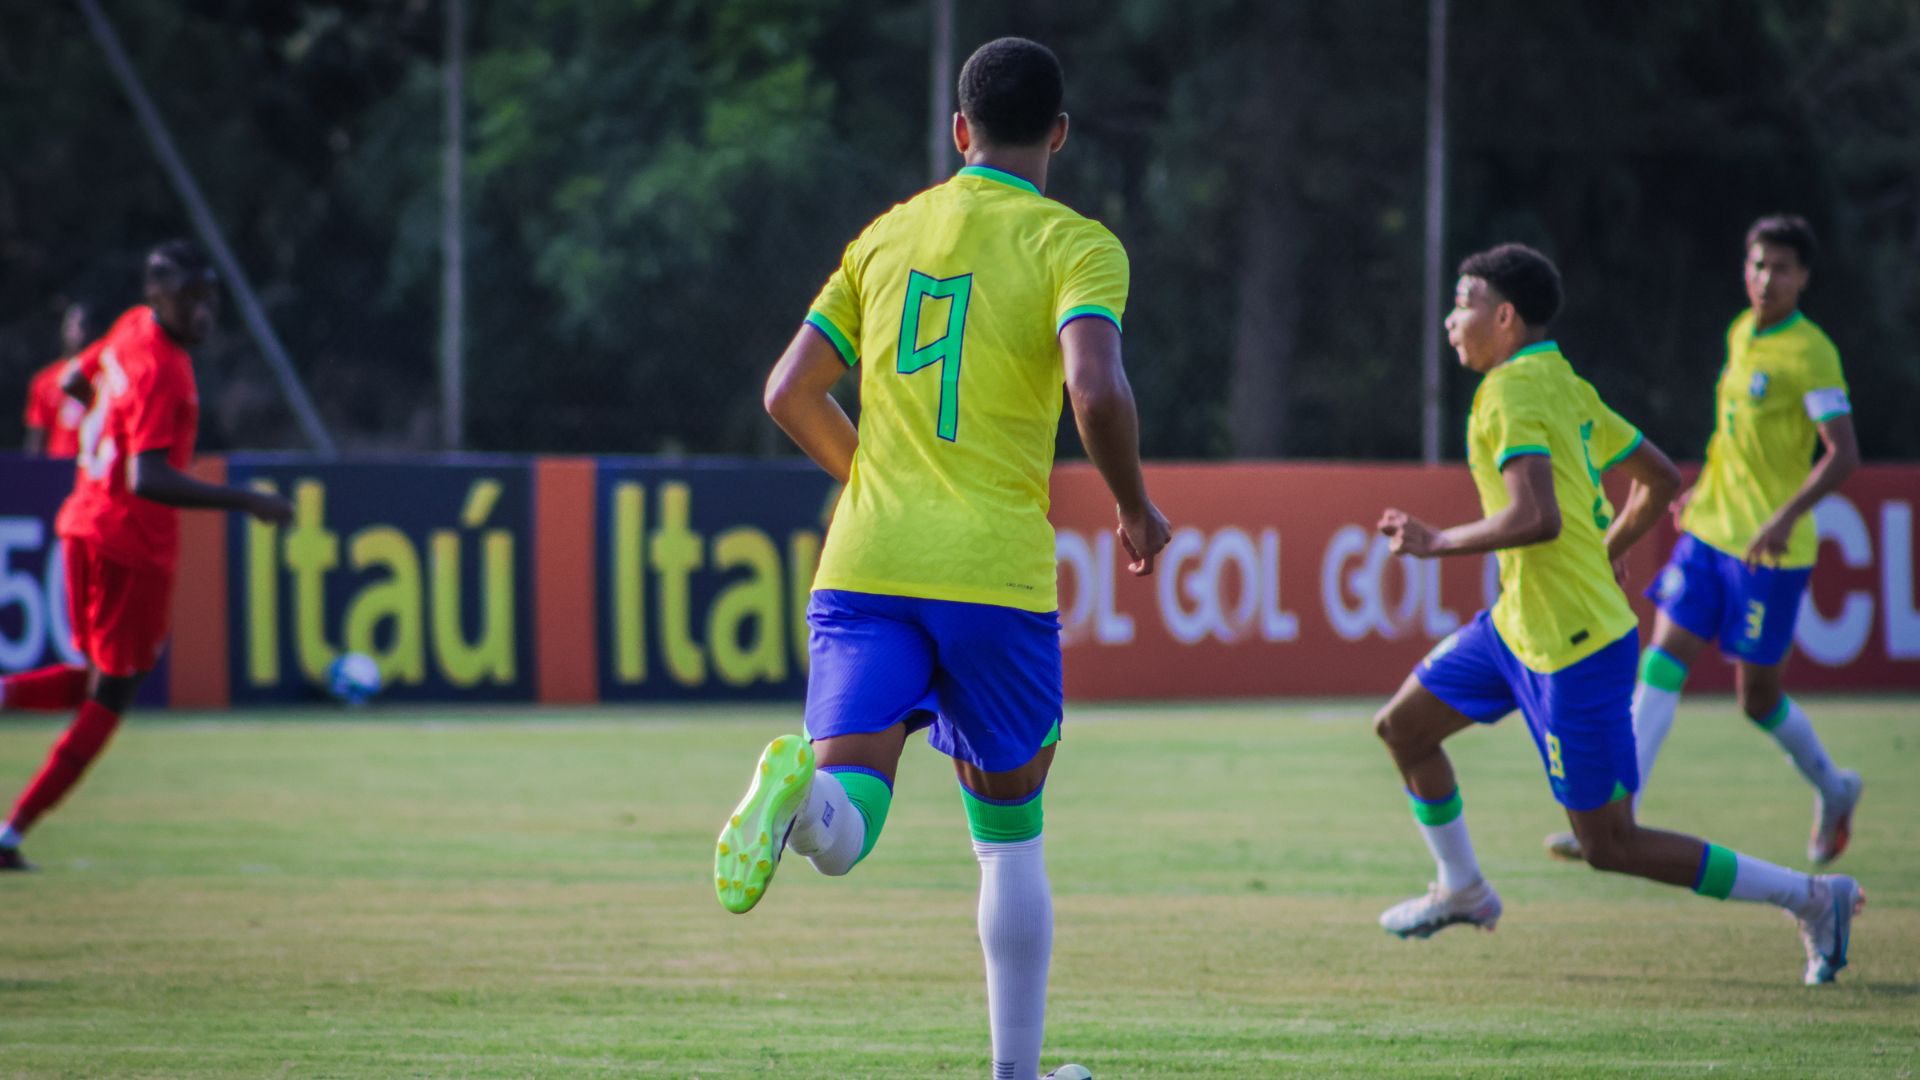 Kauã Elias em ação pela Seleção Brasileira sub-17 (Crédito: Renan Camargo / CBF))